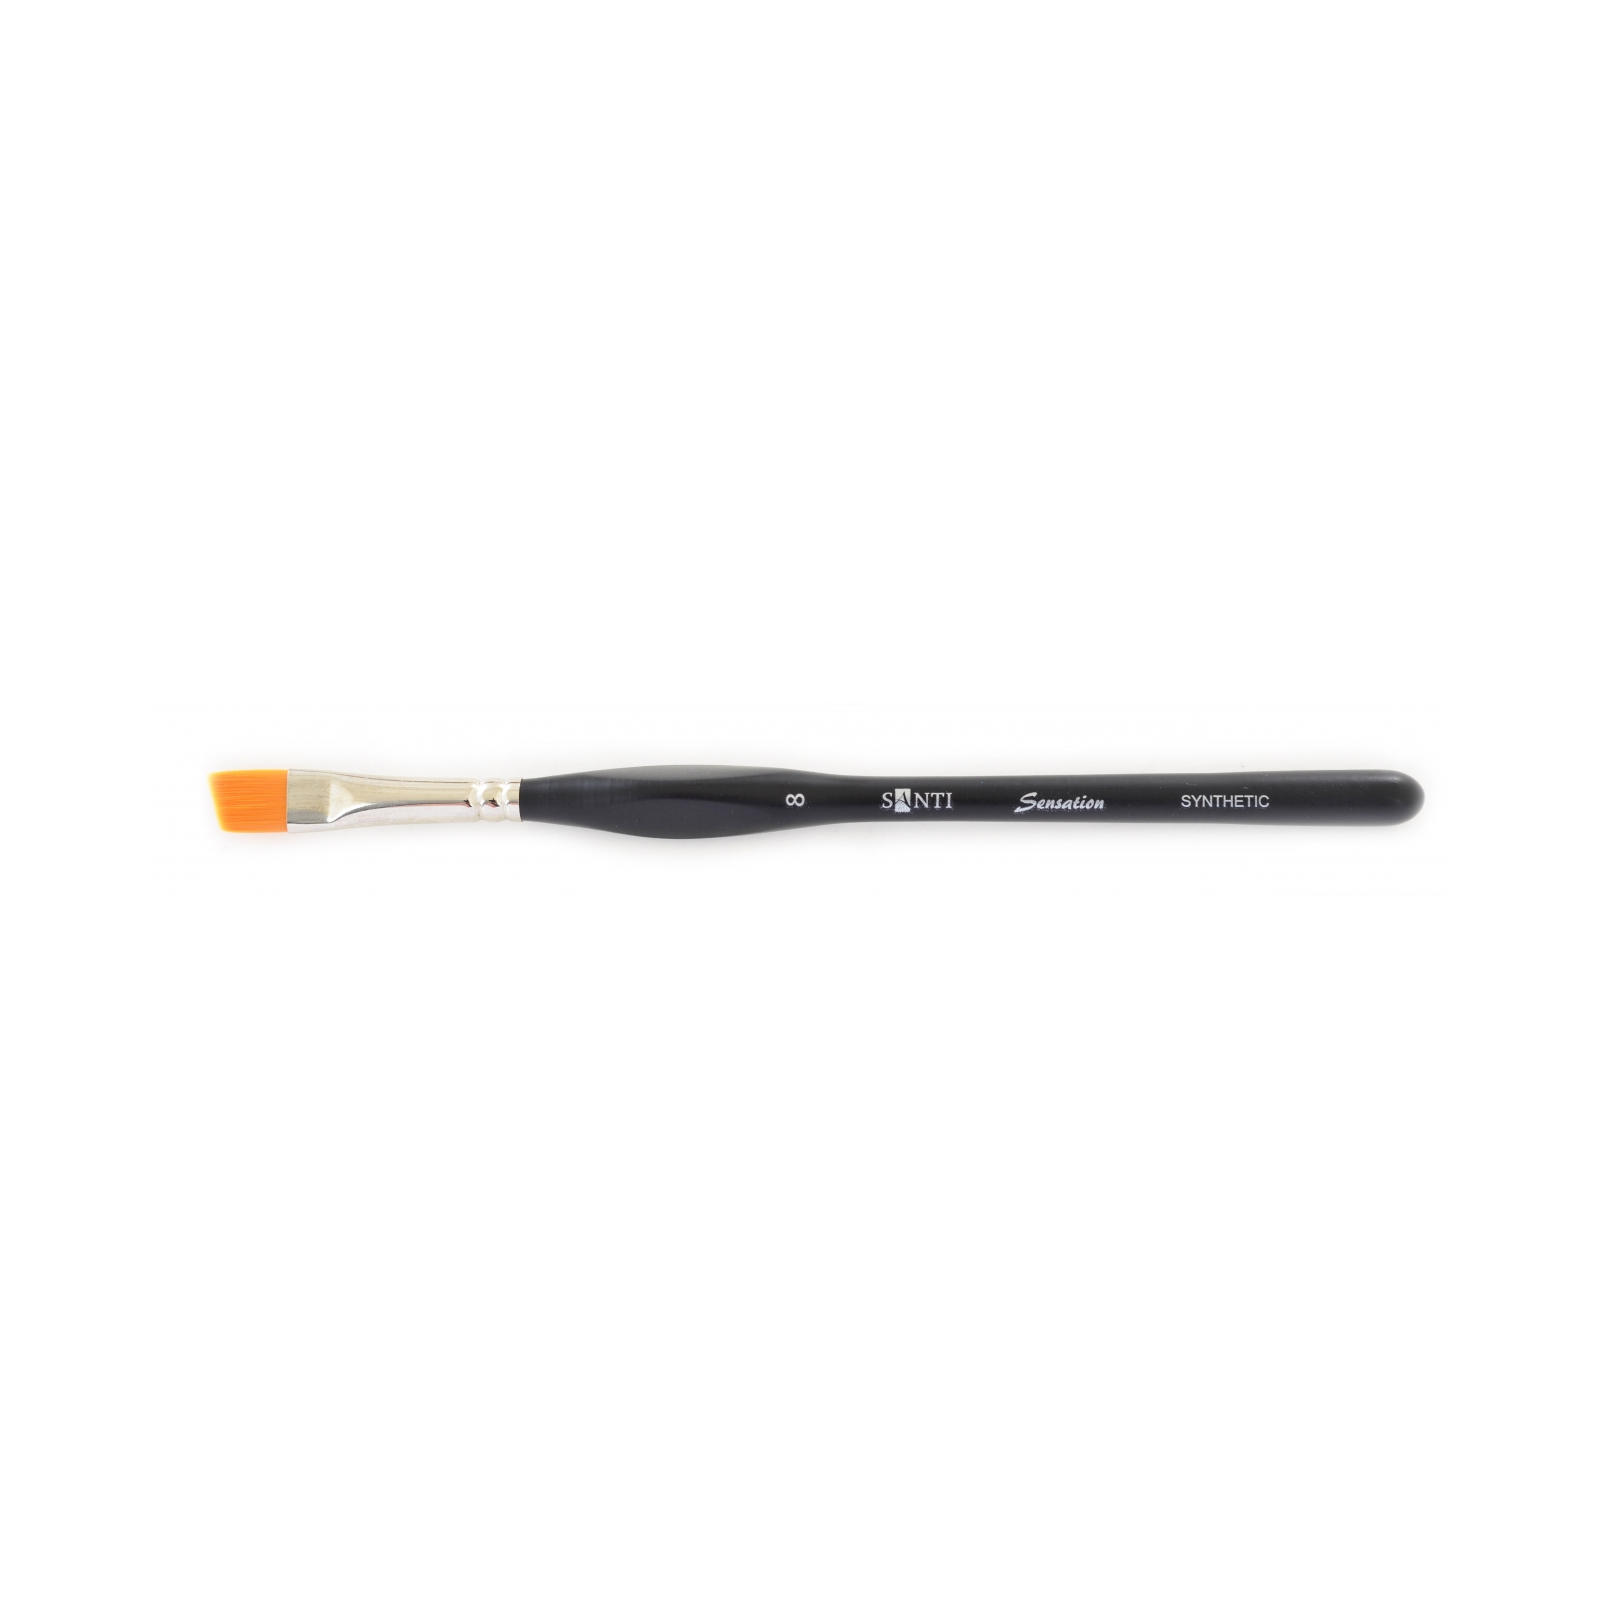 Кисточка для рисования Santi синтетика Sensation, короткая ручка с изгибом, угловая, №8 (310751)